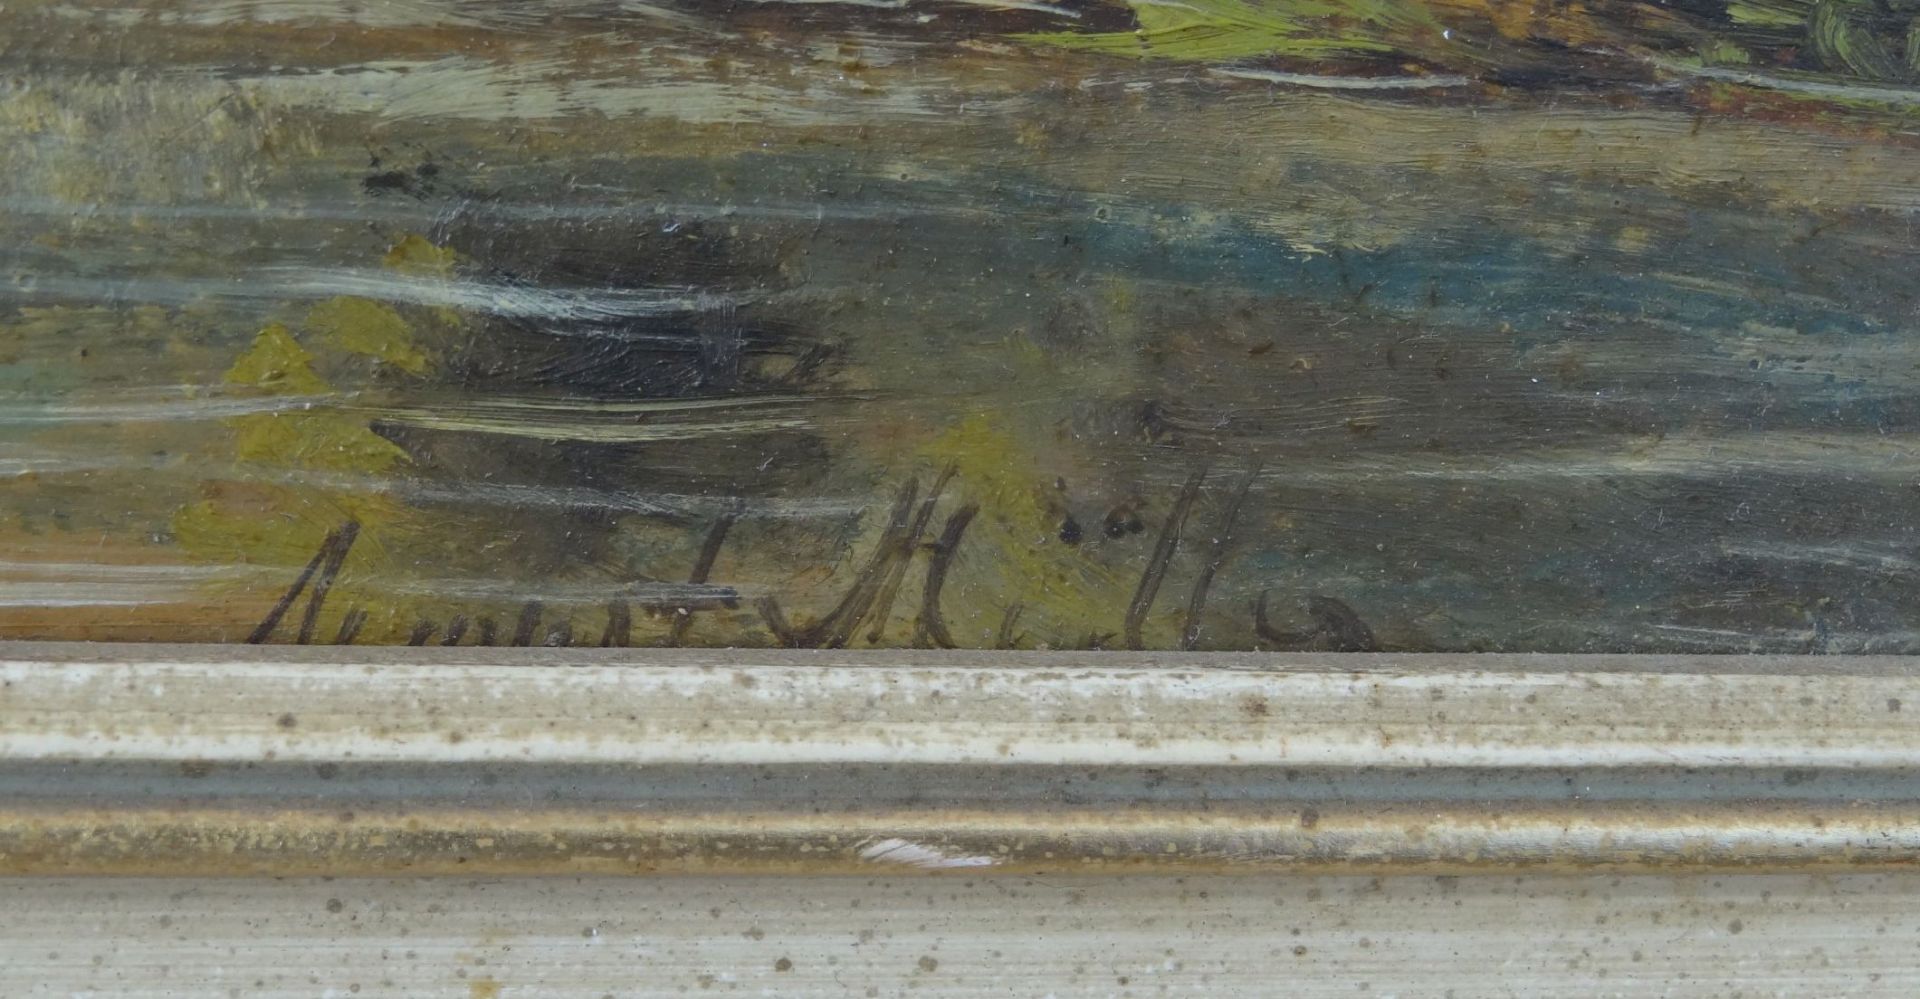 August MÜLLER (1836-1885) "Landschaft am Fluss" Öl/Platte, gerahmt, RG 25x35"""" - Bild 3 aus 4